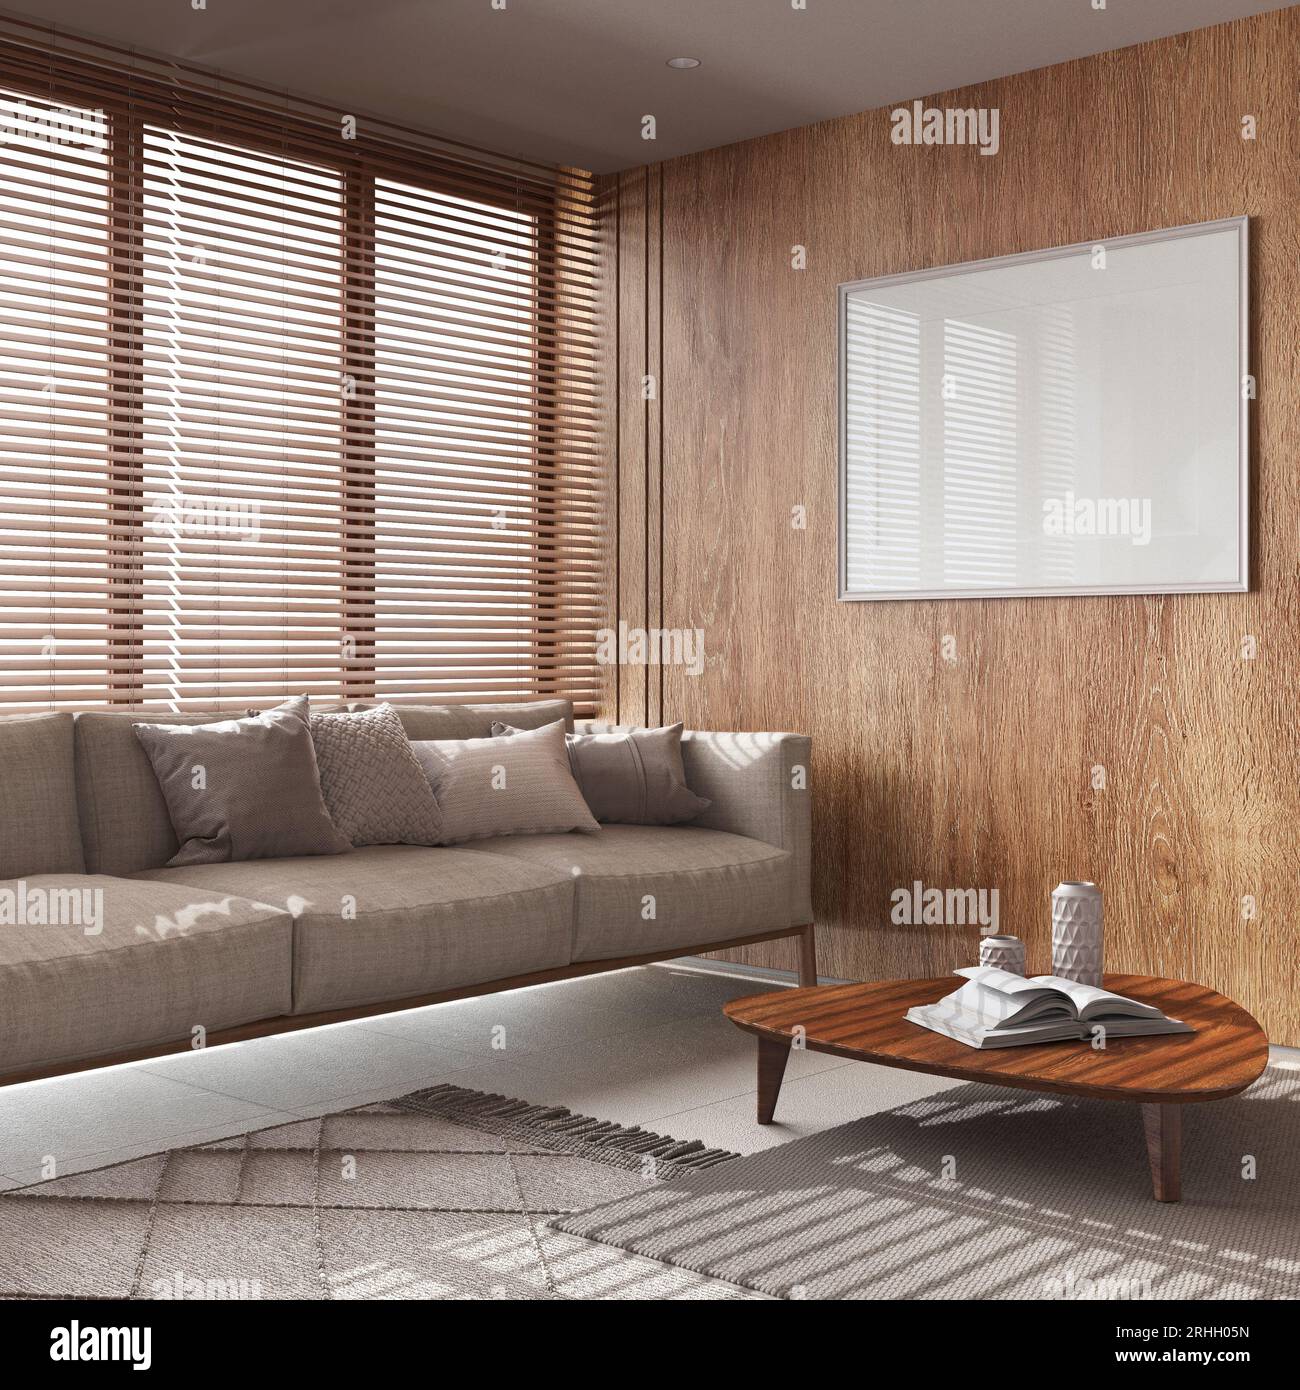 Sala de estar japonesa con papel tapiz y paredes de madera en tonos blancos  y beige. Suelo de parquet, sofá de tela, alfombras y decoraciones. Mínimo  japandi interio Fotografía de stock 